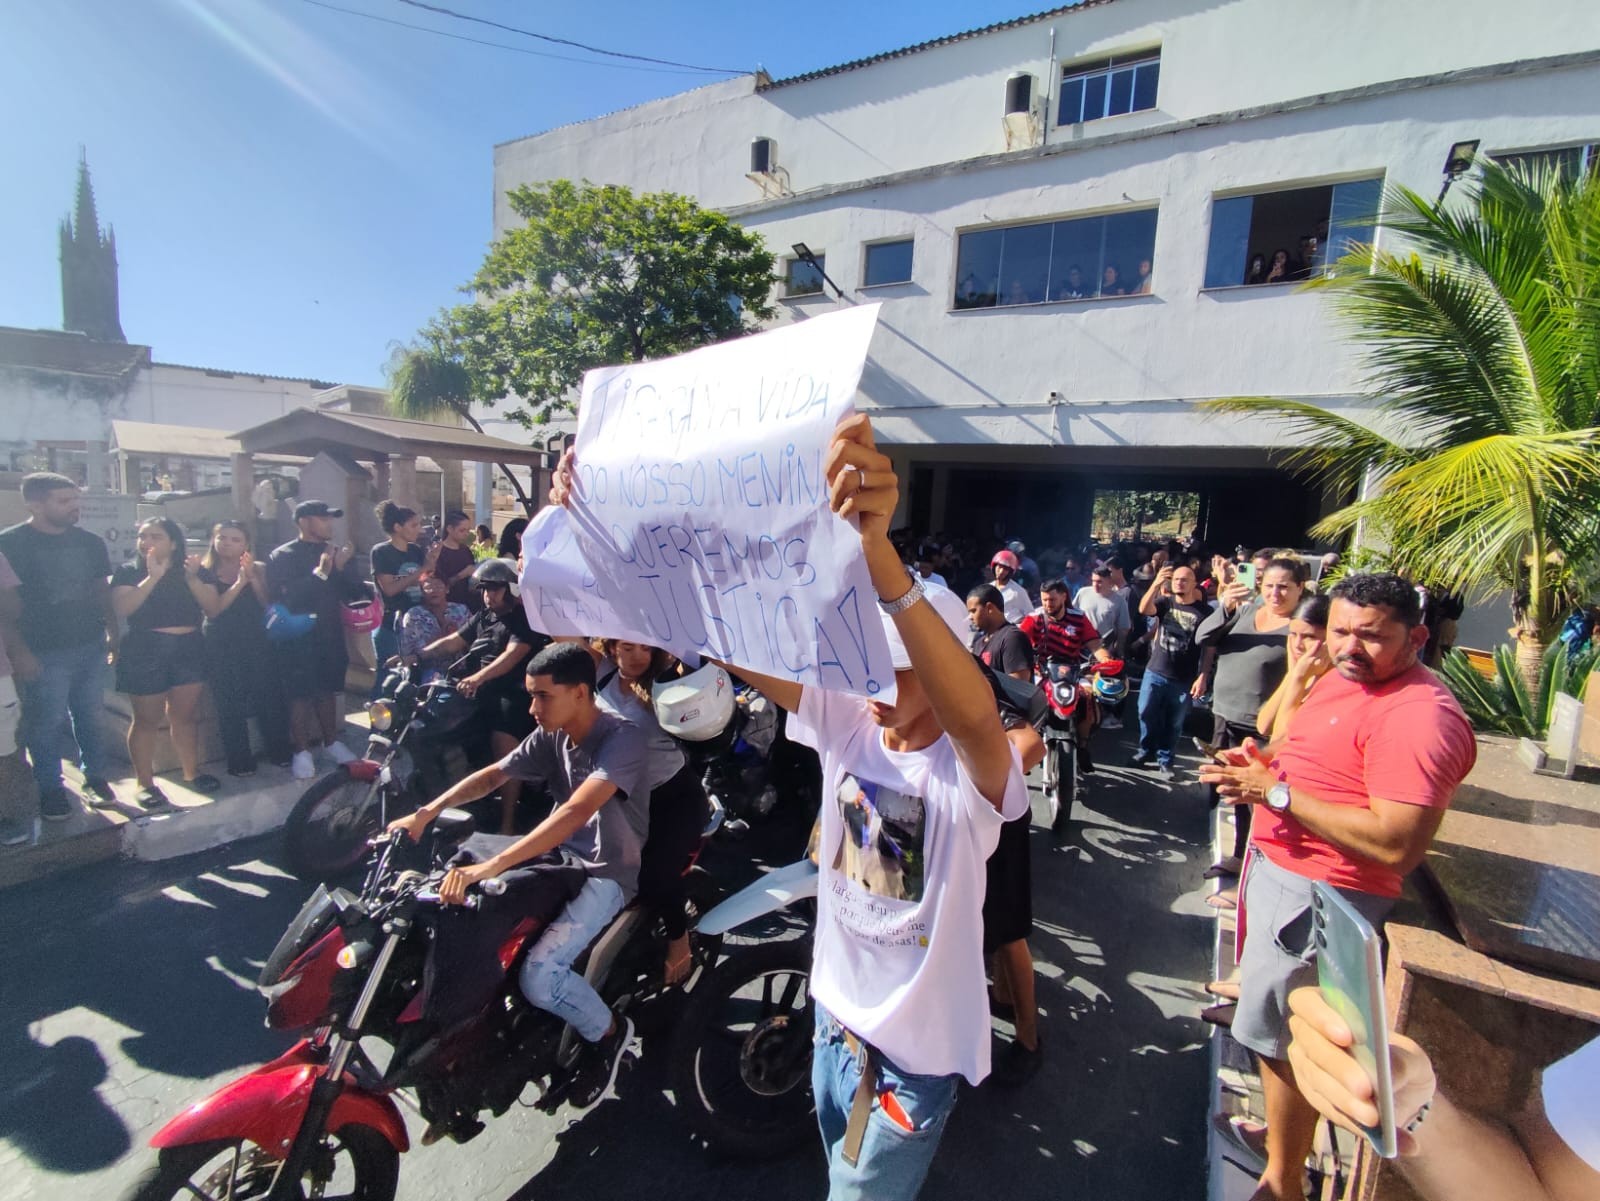 Jovem atropelado após briga de trânsito é enterrado no Centro do Rio